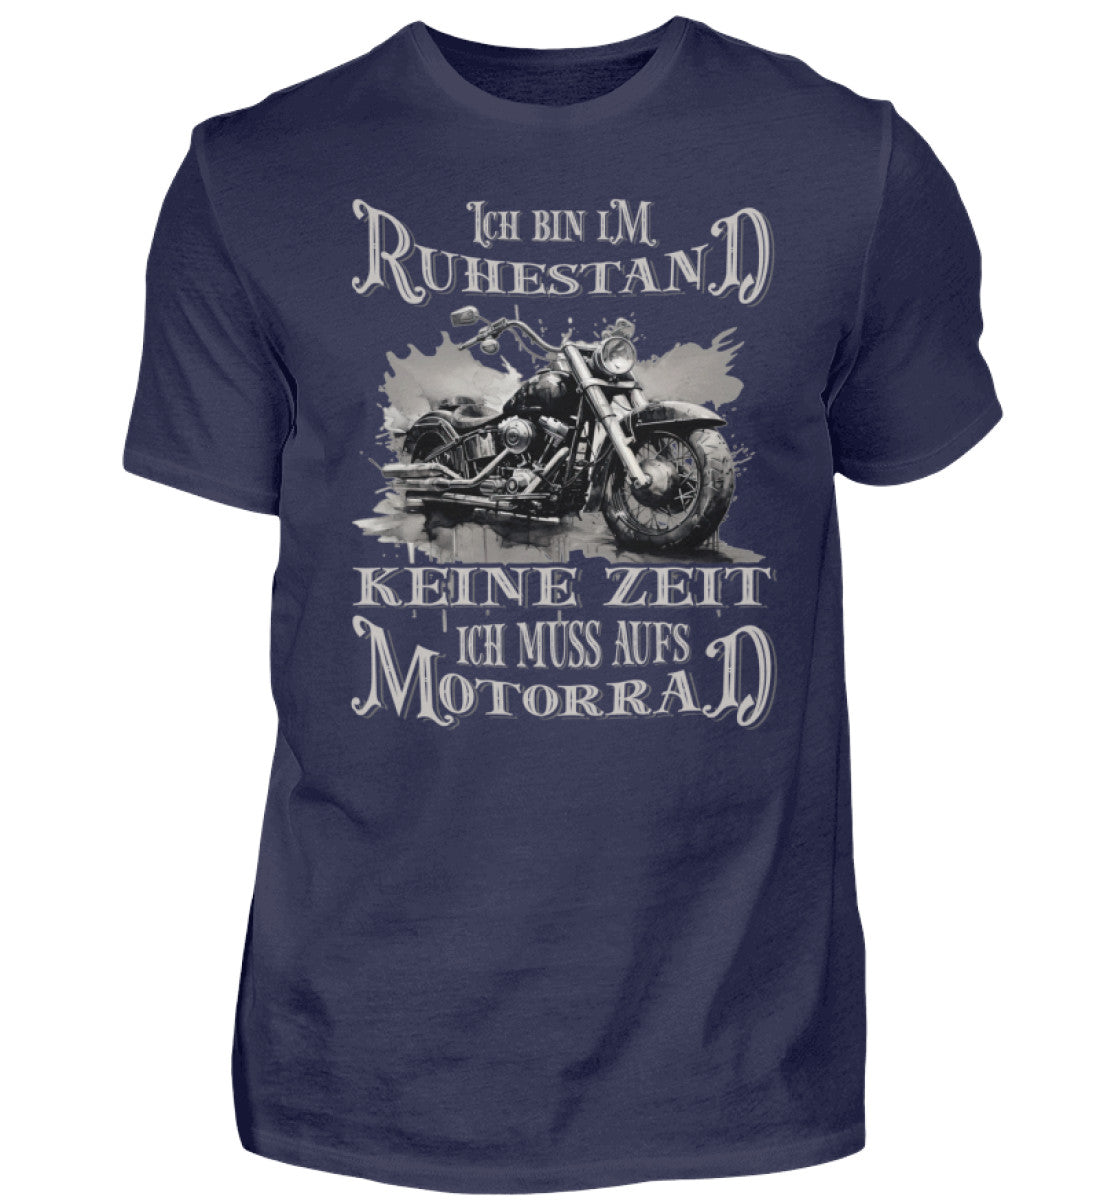 Ein Biker T-Shirt für Motorradfahrer von Wingbikers mit dem Aufdruck, Ich bin im Ruhestand - Keine Zeit - Ich muss aufs Motorrad, in navy blau.